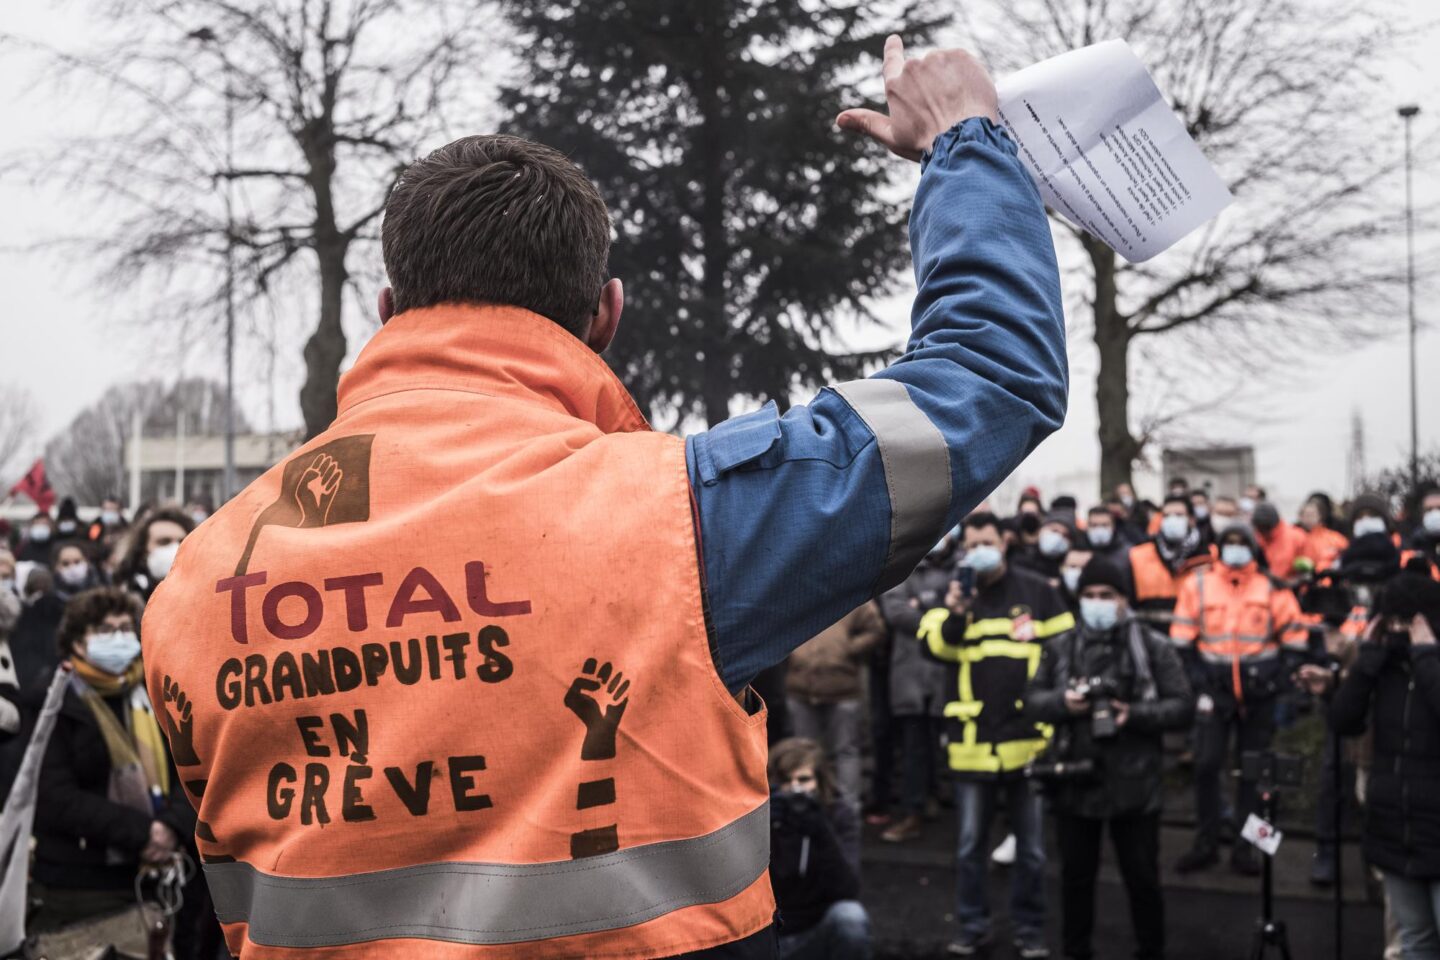 Intervista ad Adrien, sindacalista CGT e militante rivoluzionario, sullo sciopero della raffineria Total di Grandpuits